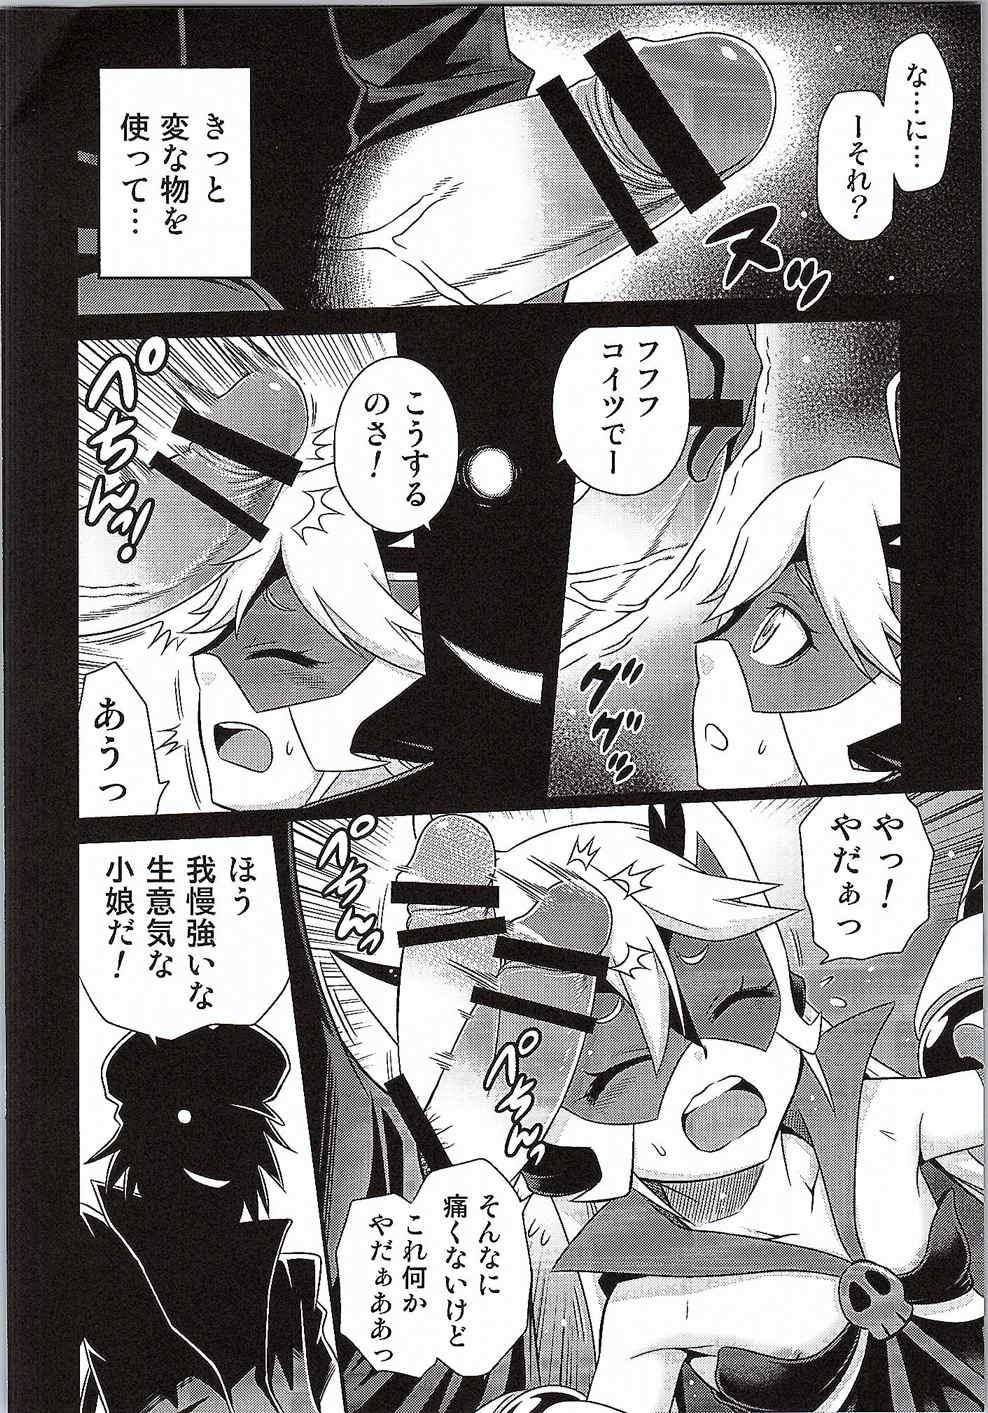 Body Tenshi-chan no Yume wa Yoru Hiraku - Yoru no yatterman Femdom Porn - Page 3